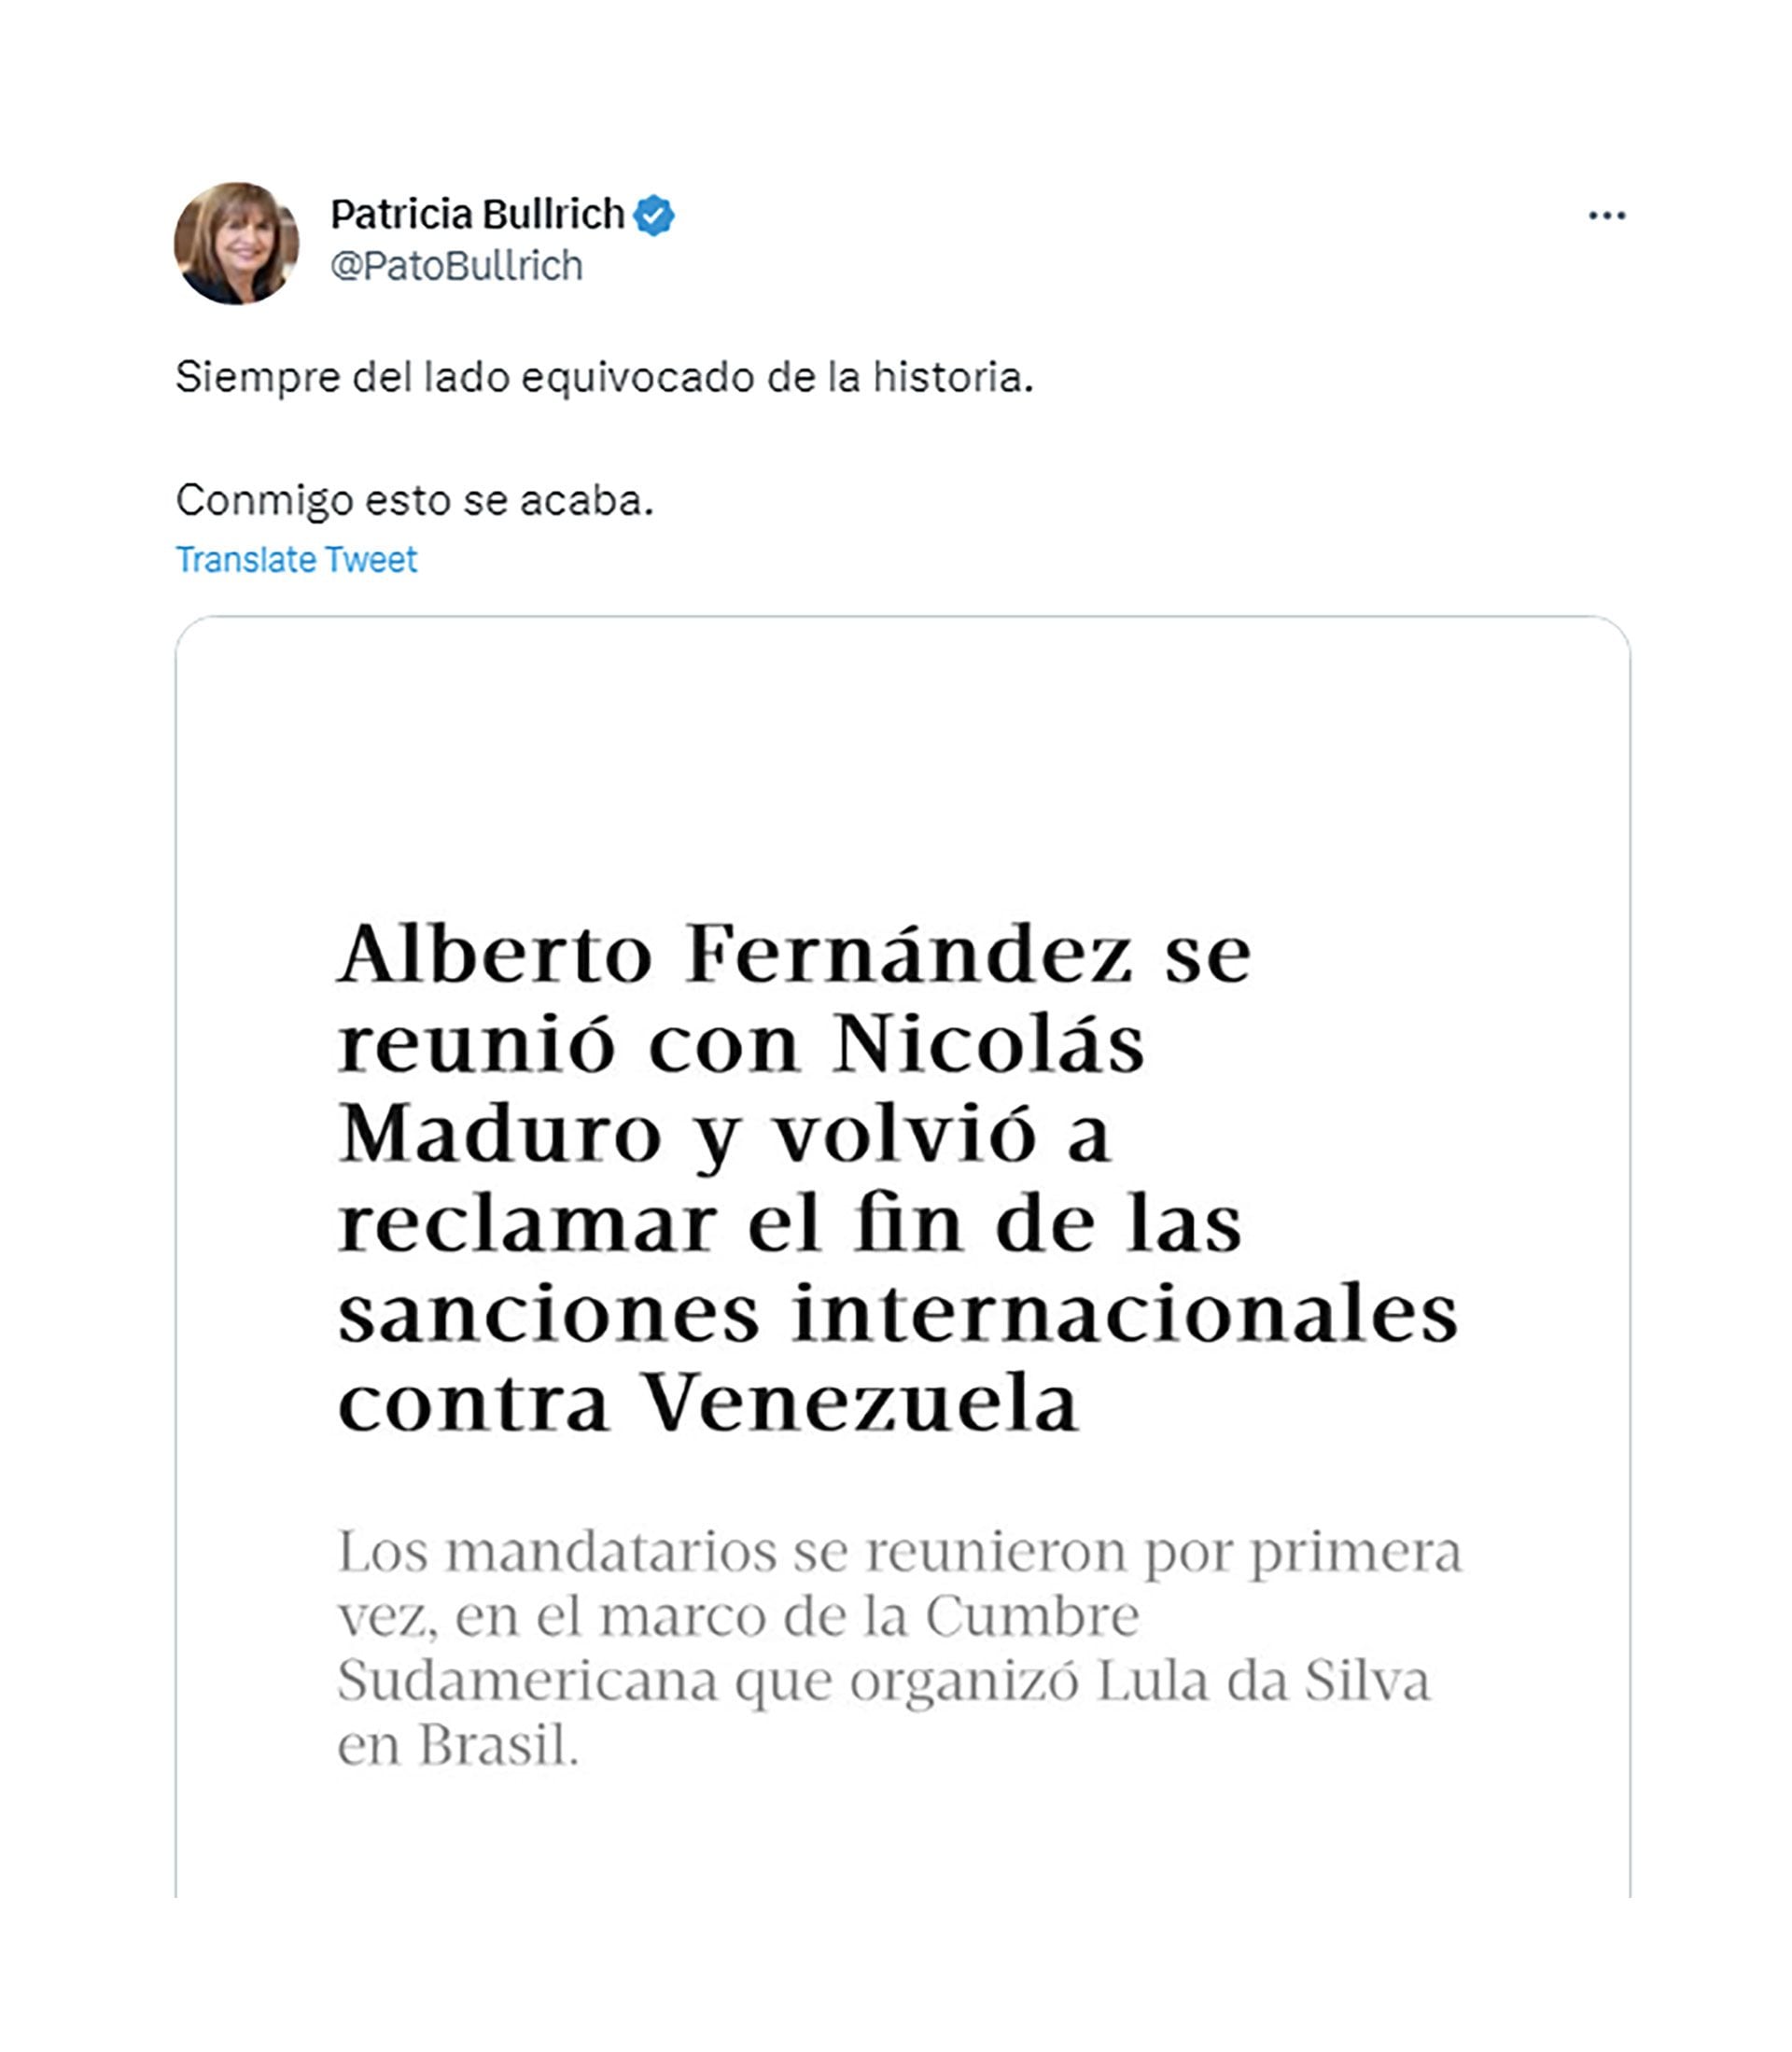 El tuit de Patricia Bullrich sobre la reunión de Alberto Fernández y Nicolás Maduro